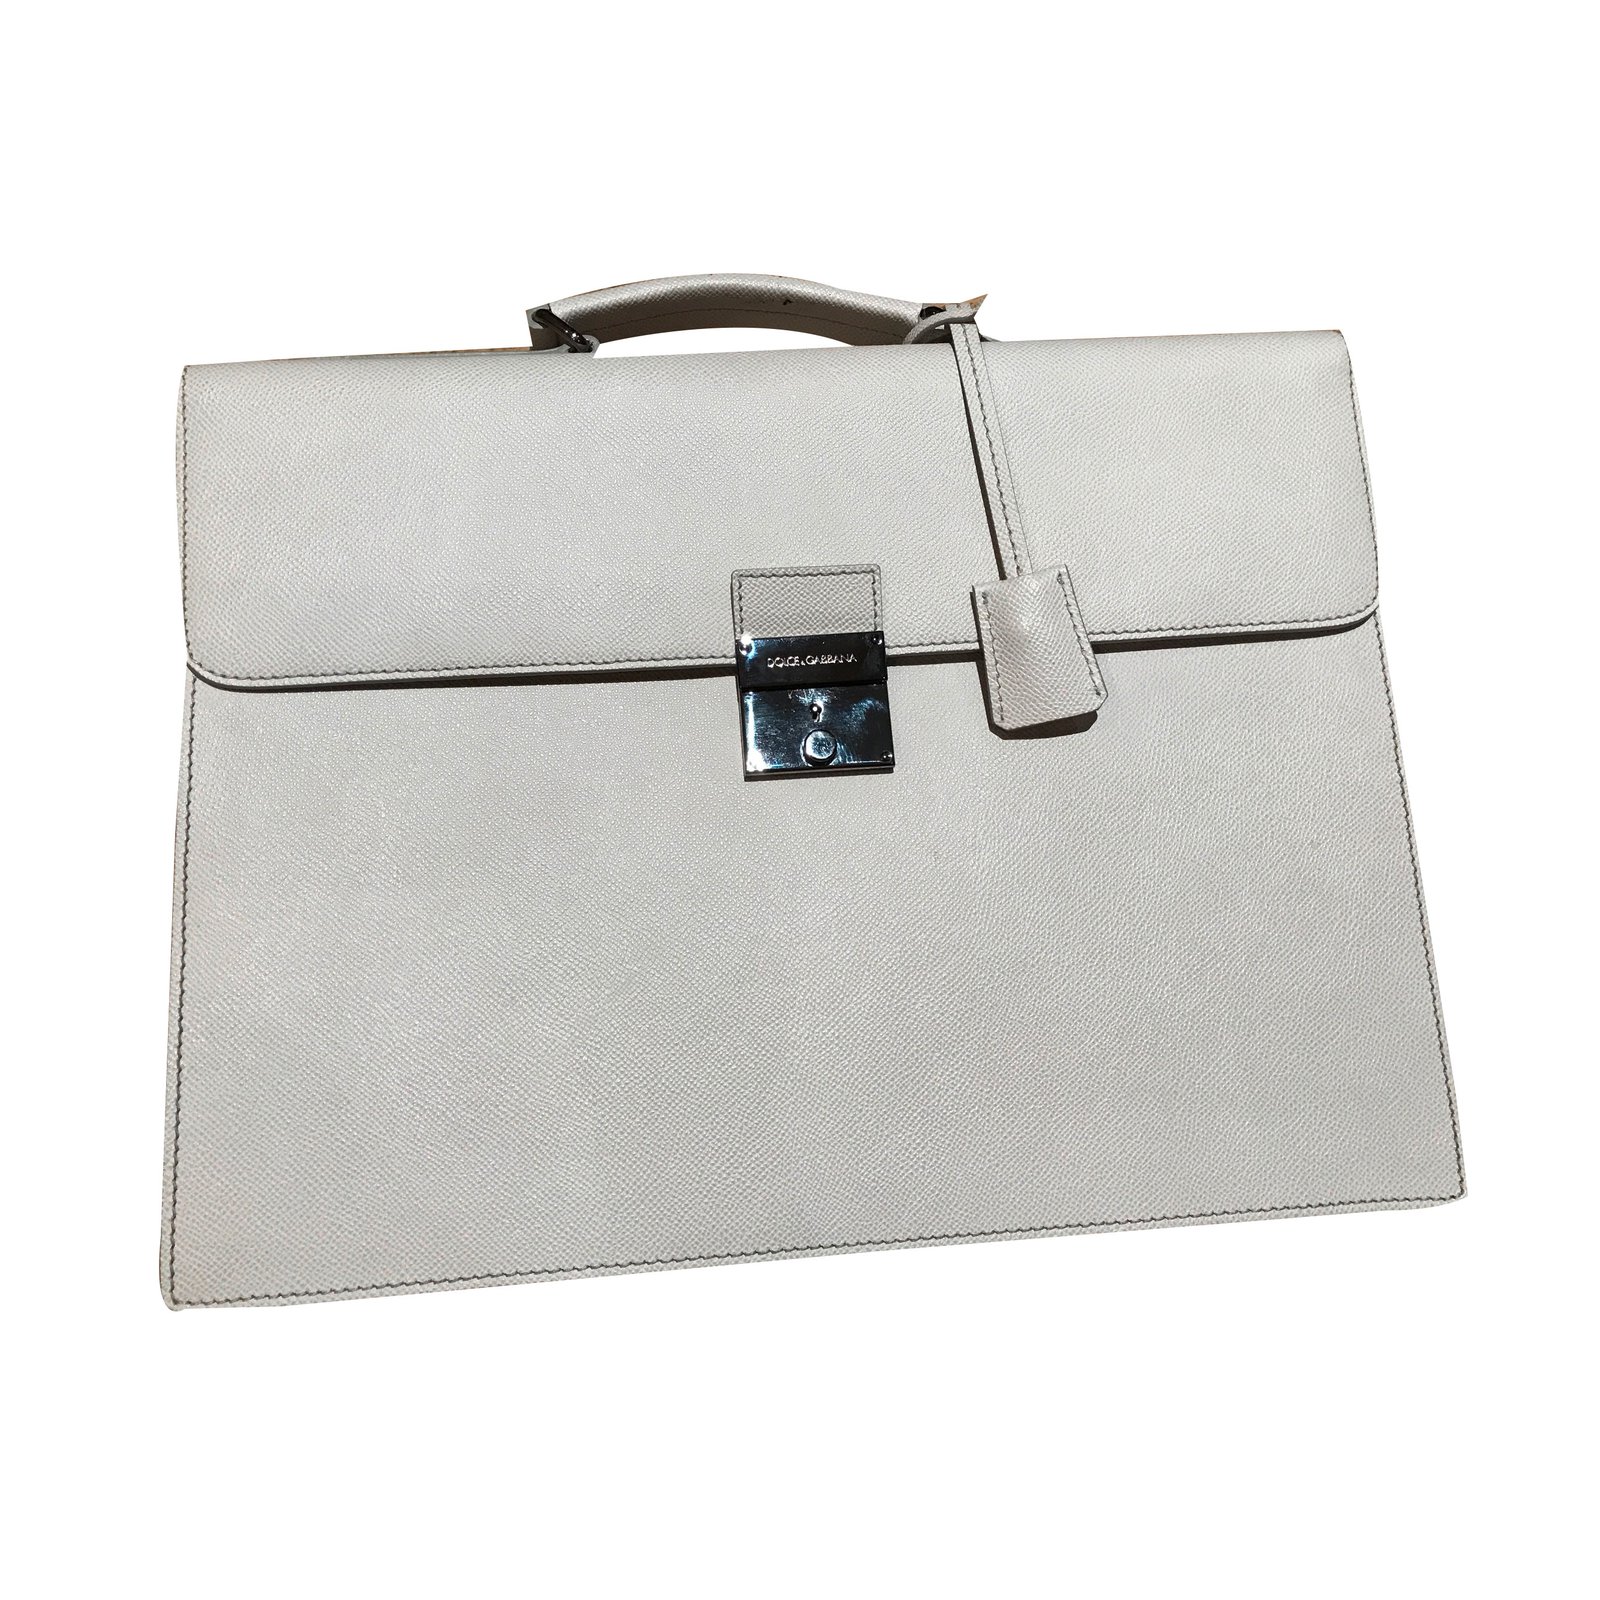 dolce gabbana briefcase